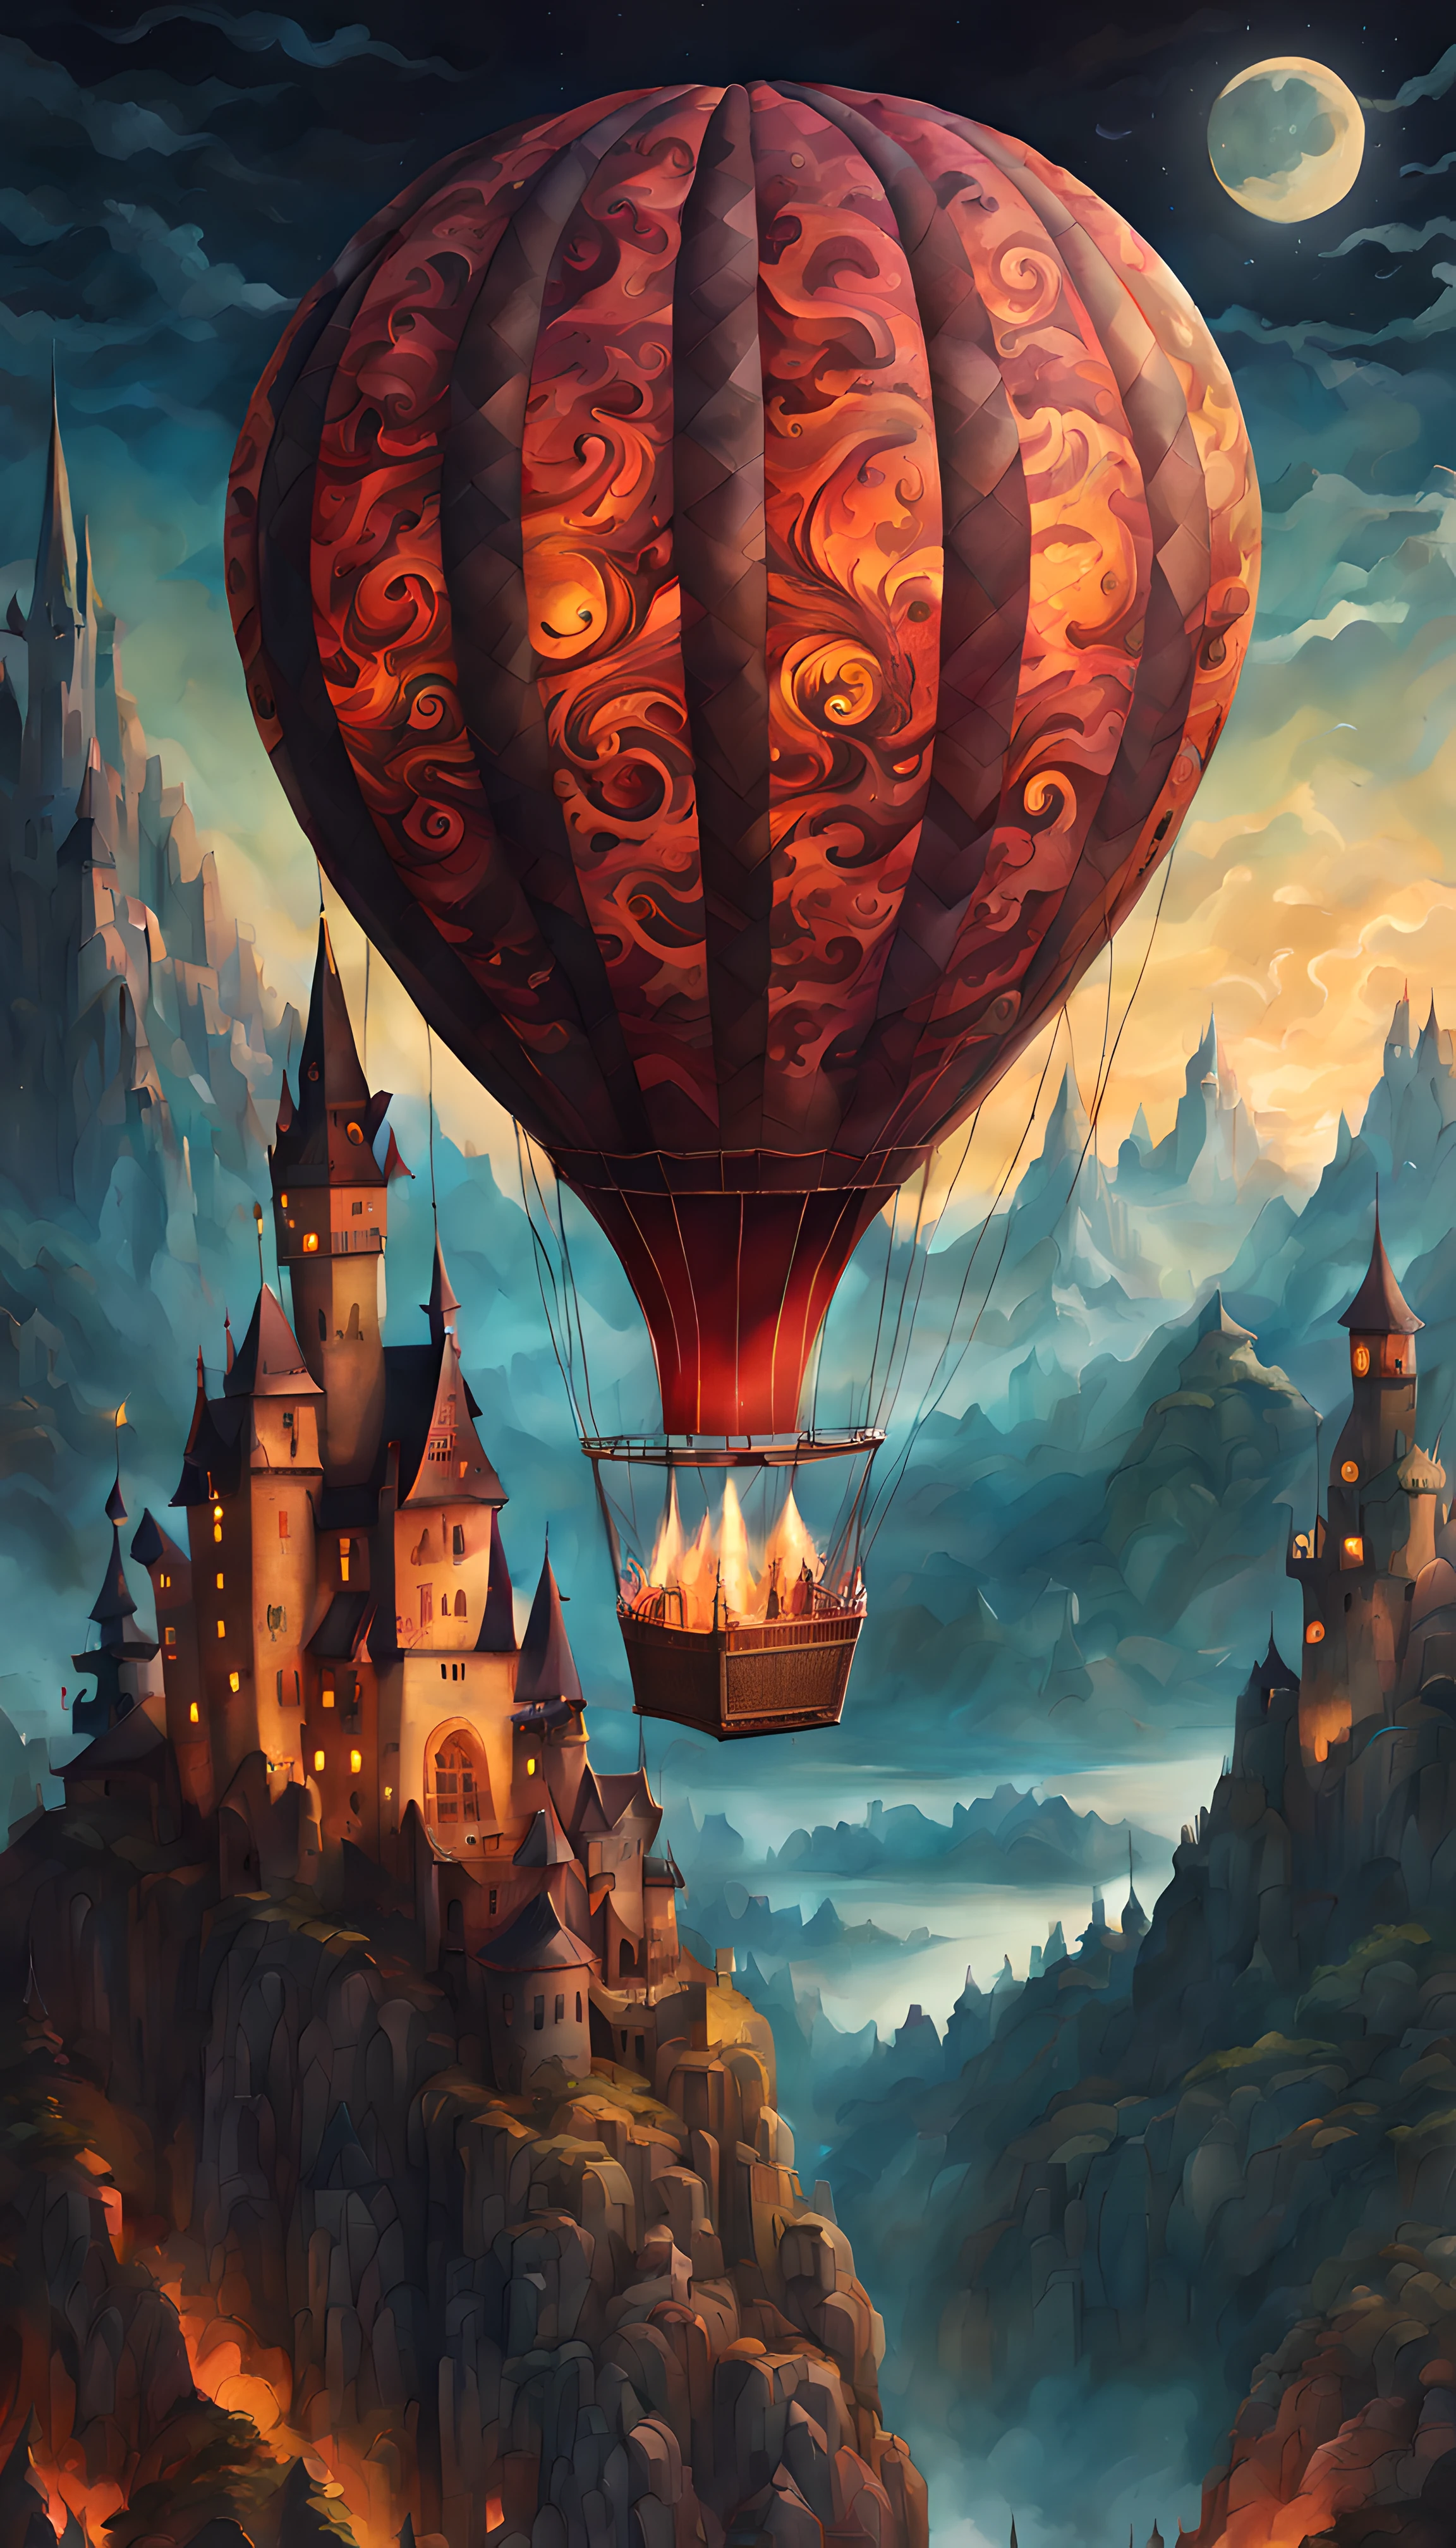 (史诗般的纸画) 的一個 (大的) 熱氣球 (上面有传说中的龙纹:1.3), 浪漫的魔幻流动, 星光燦爛的月夜, 哥特式城堡, 山脉, 體積照明